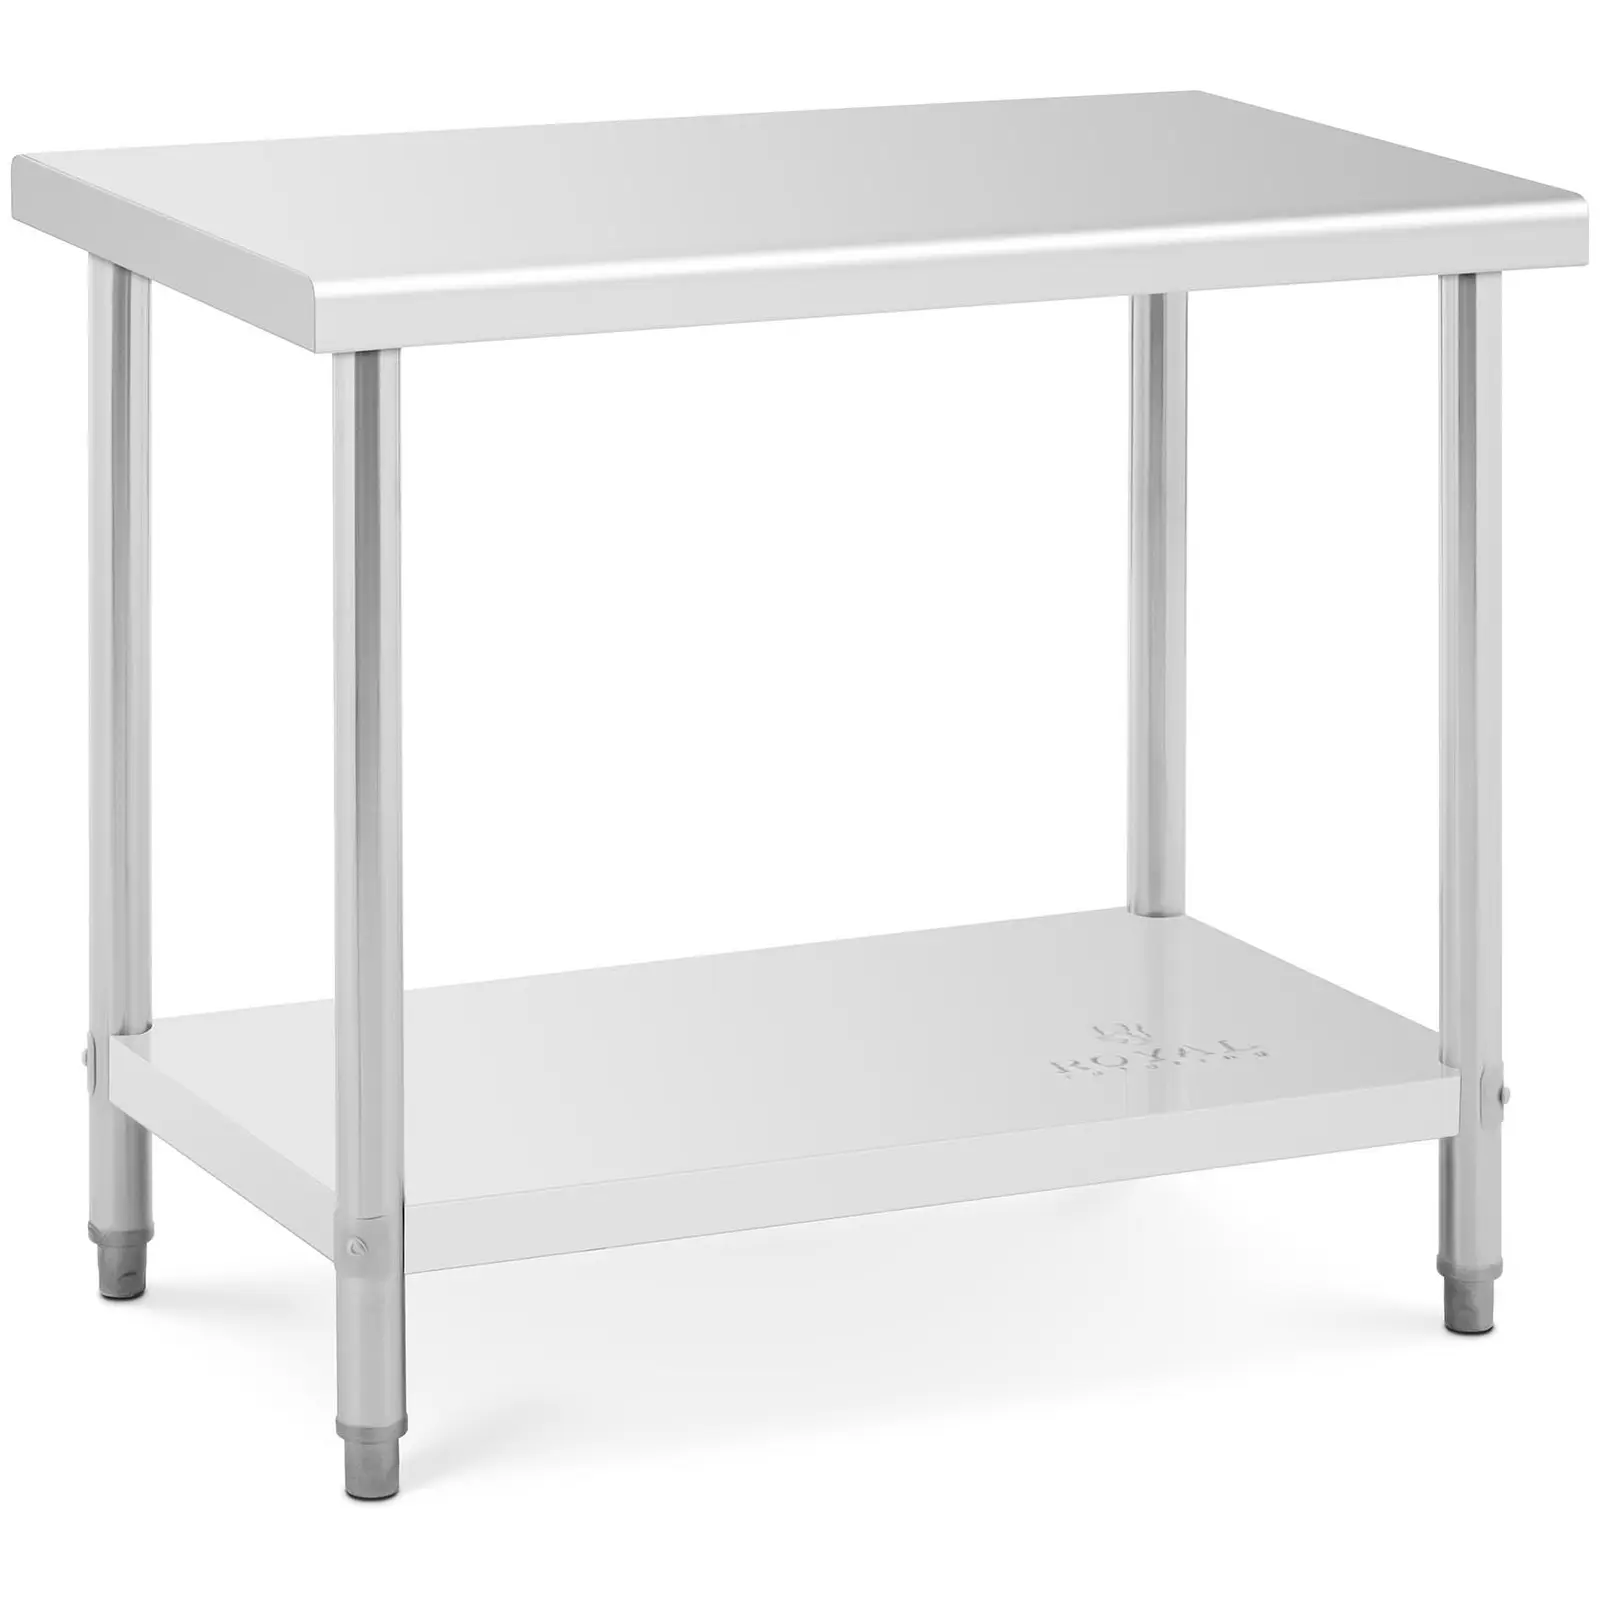 Pracovní stůl z ušlechtilé oceli 100 x 60 cm - Pracovní stoly Royal Catering